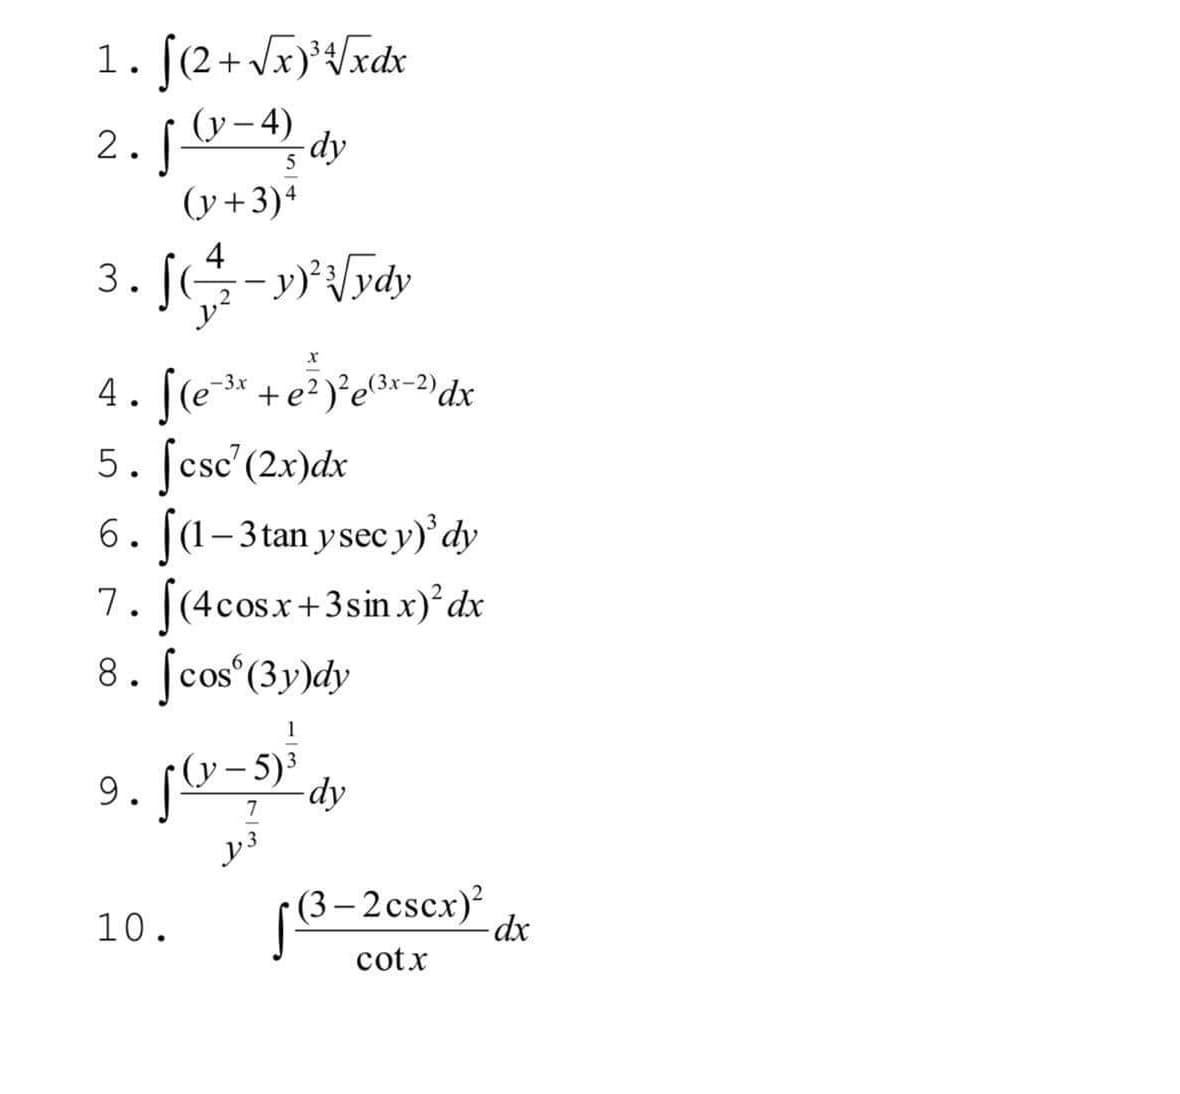 1. [(2+Jxt/xdx
2.0-4, dy
(y+3)+
4
3.
4. [(e-3* +e? )²e3x=2)dx
5. [csc'(2x)dx
6. (1-3tan ysec y)' dy
7. [(4cosx+3sin x)°dx
8. ſcos°(3y)dy
(у — 5)*
9. [º-5) dy
[8-2cscx)²
(3 –
10.
cotx
